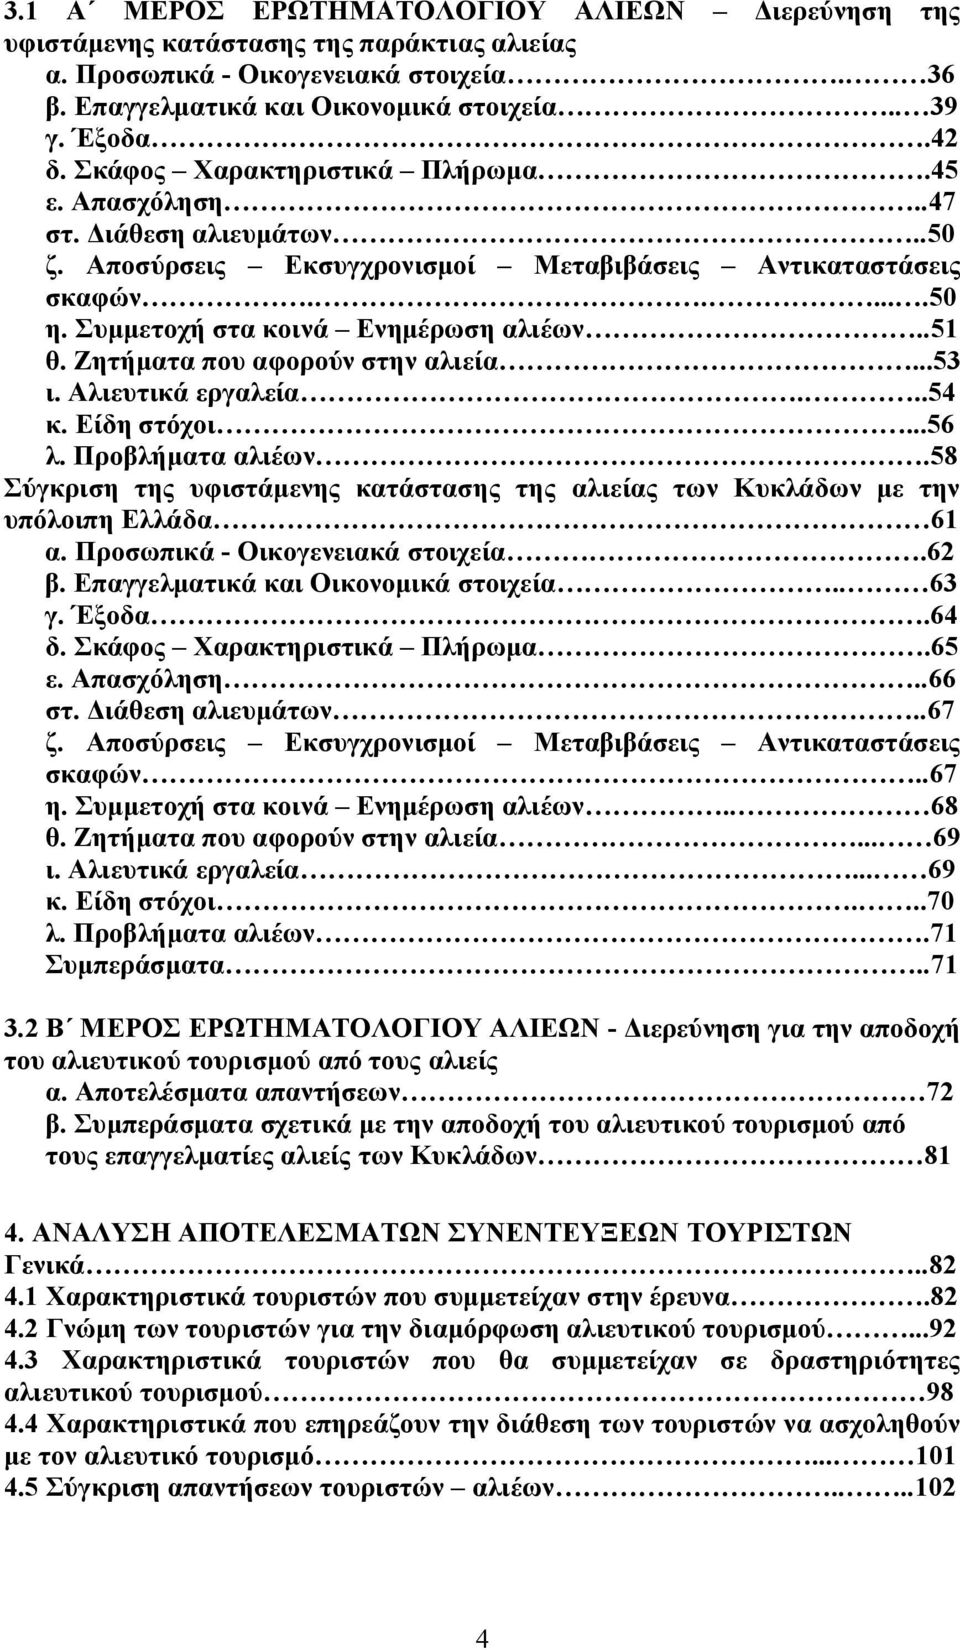 Ζητήματα που αφορούν στην αλιεία...53 ι. Αλιευτικά εργαλεία...54 κ. Είδη στόχοι...56 λ. Προβλήματα αλιέων.58 Σύγκριση της υφιστάμενης κατάστασης της αλιείας των Κυκλάδων με την υπόλοιπη Ελλάδα 61 α.